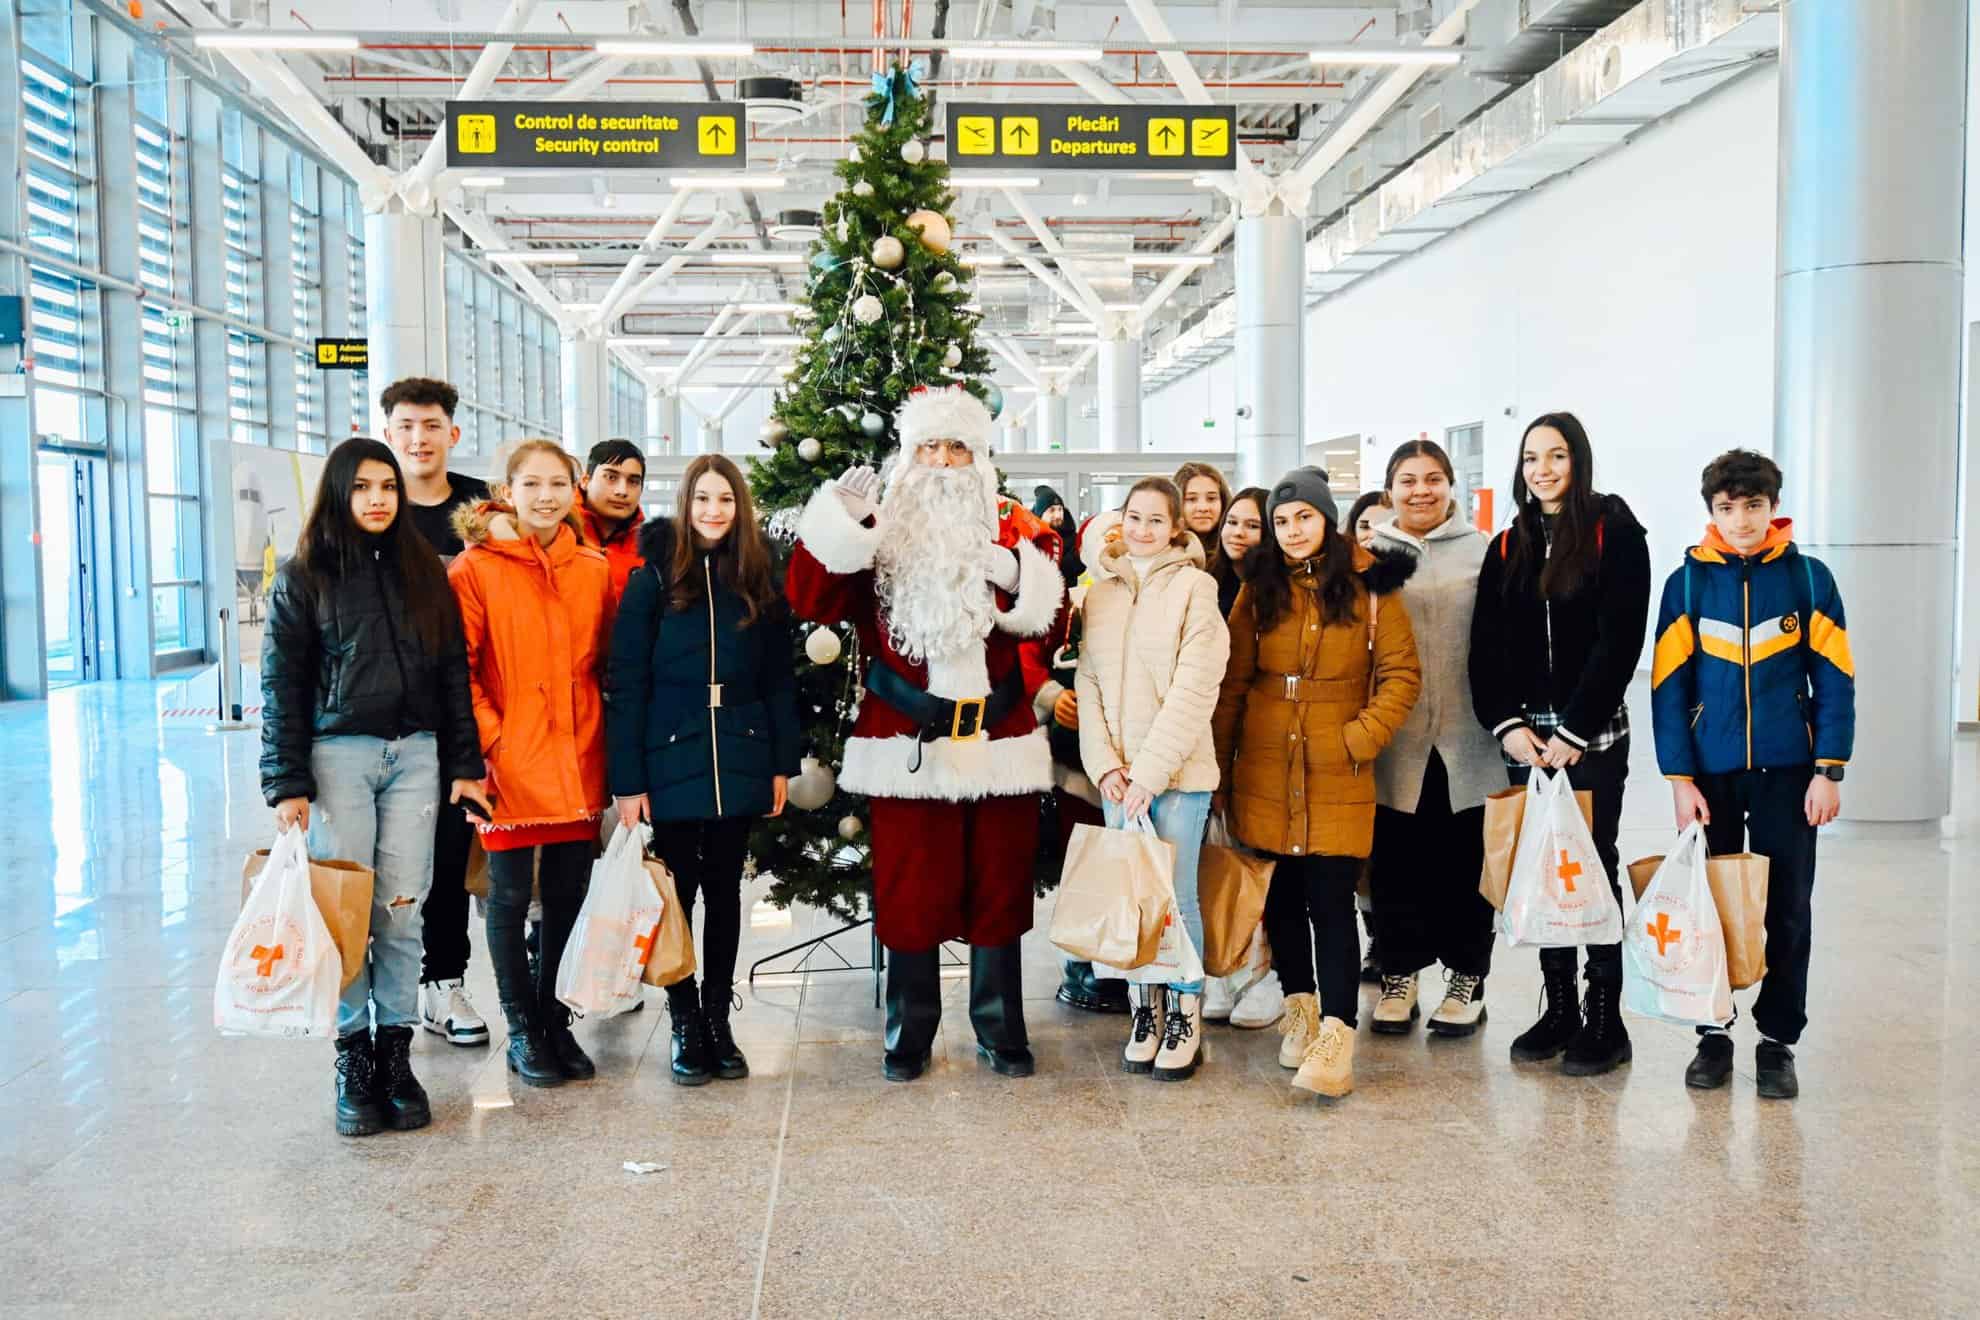 moș crăciun a venit din nou la sibiu cu avionul. elevii de la școala din bârghiș, l-au întâmpinat pe aeroport (foto)